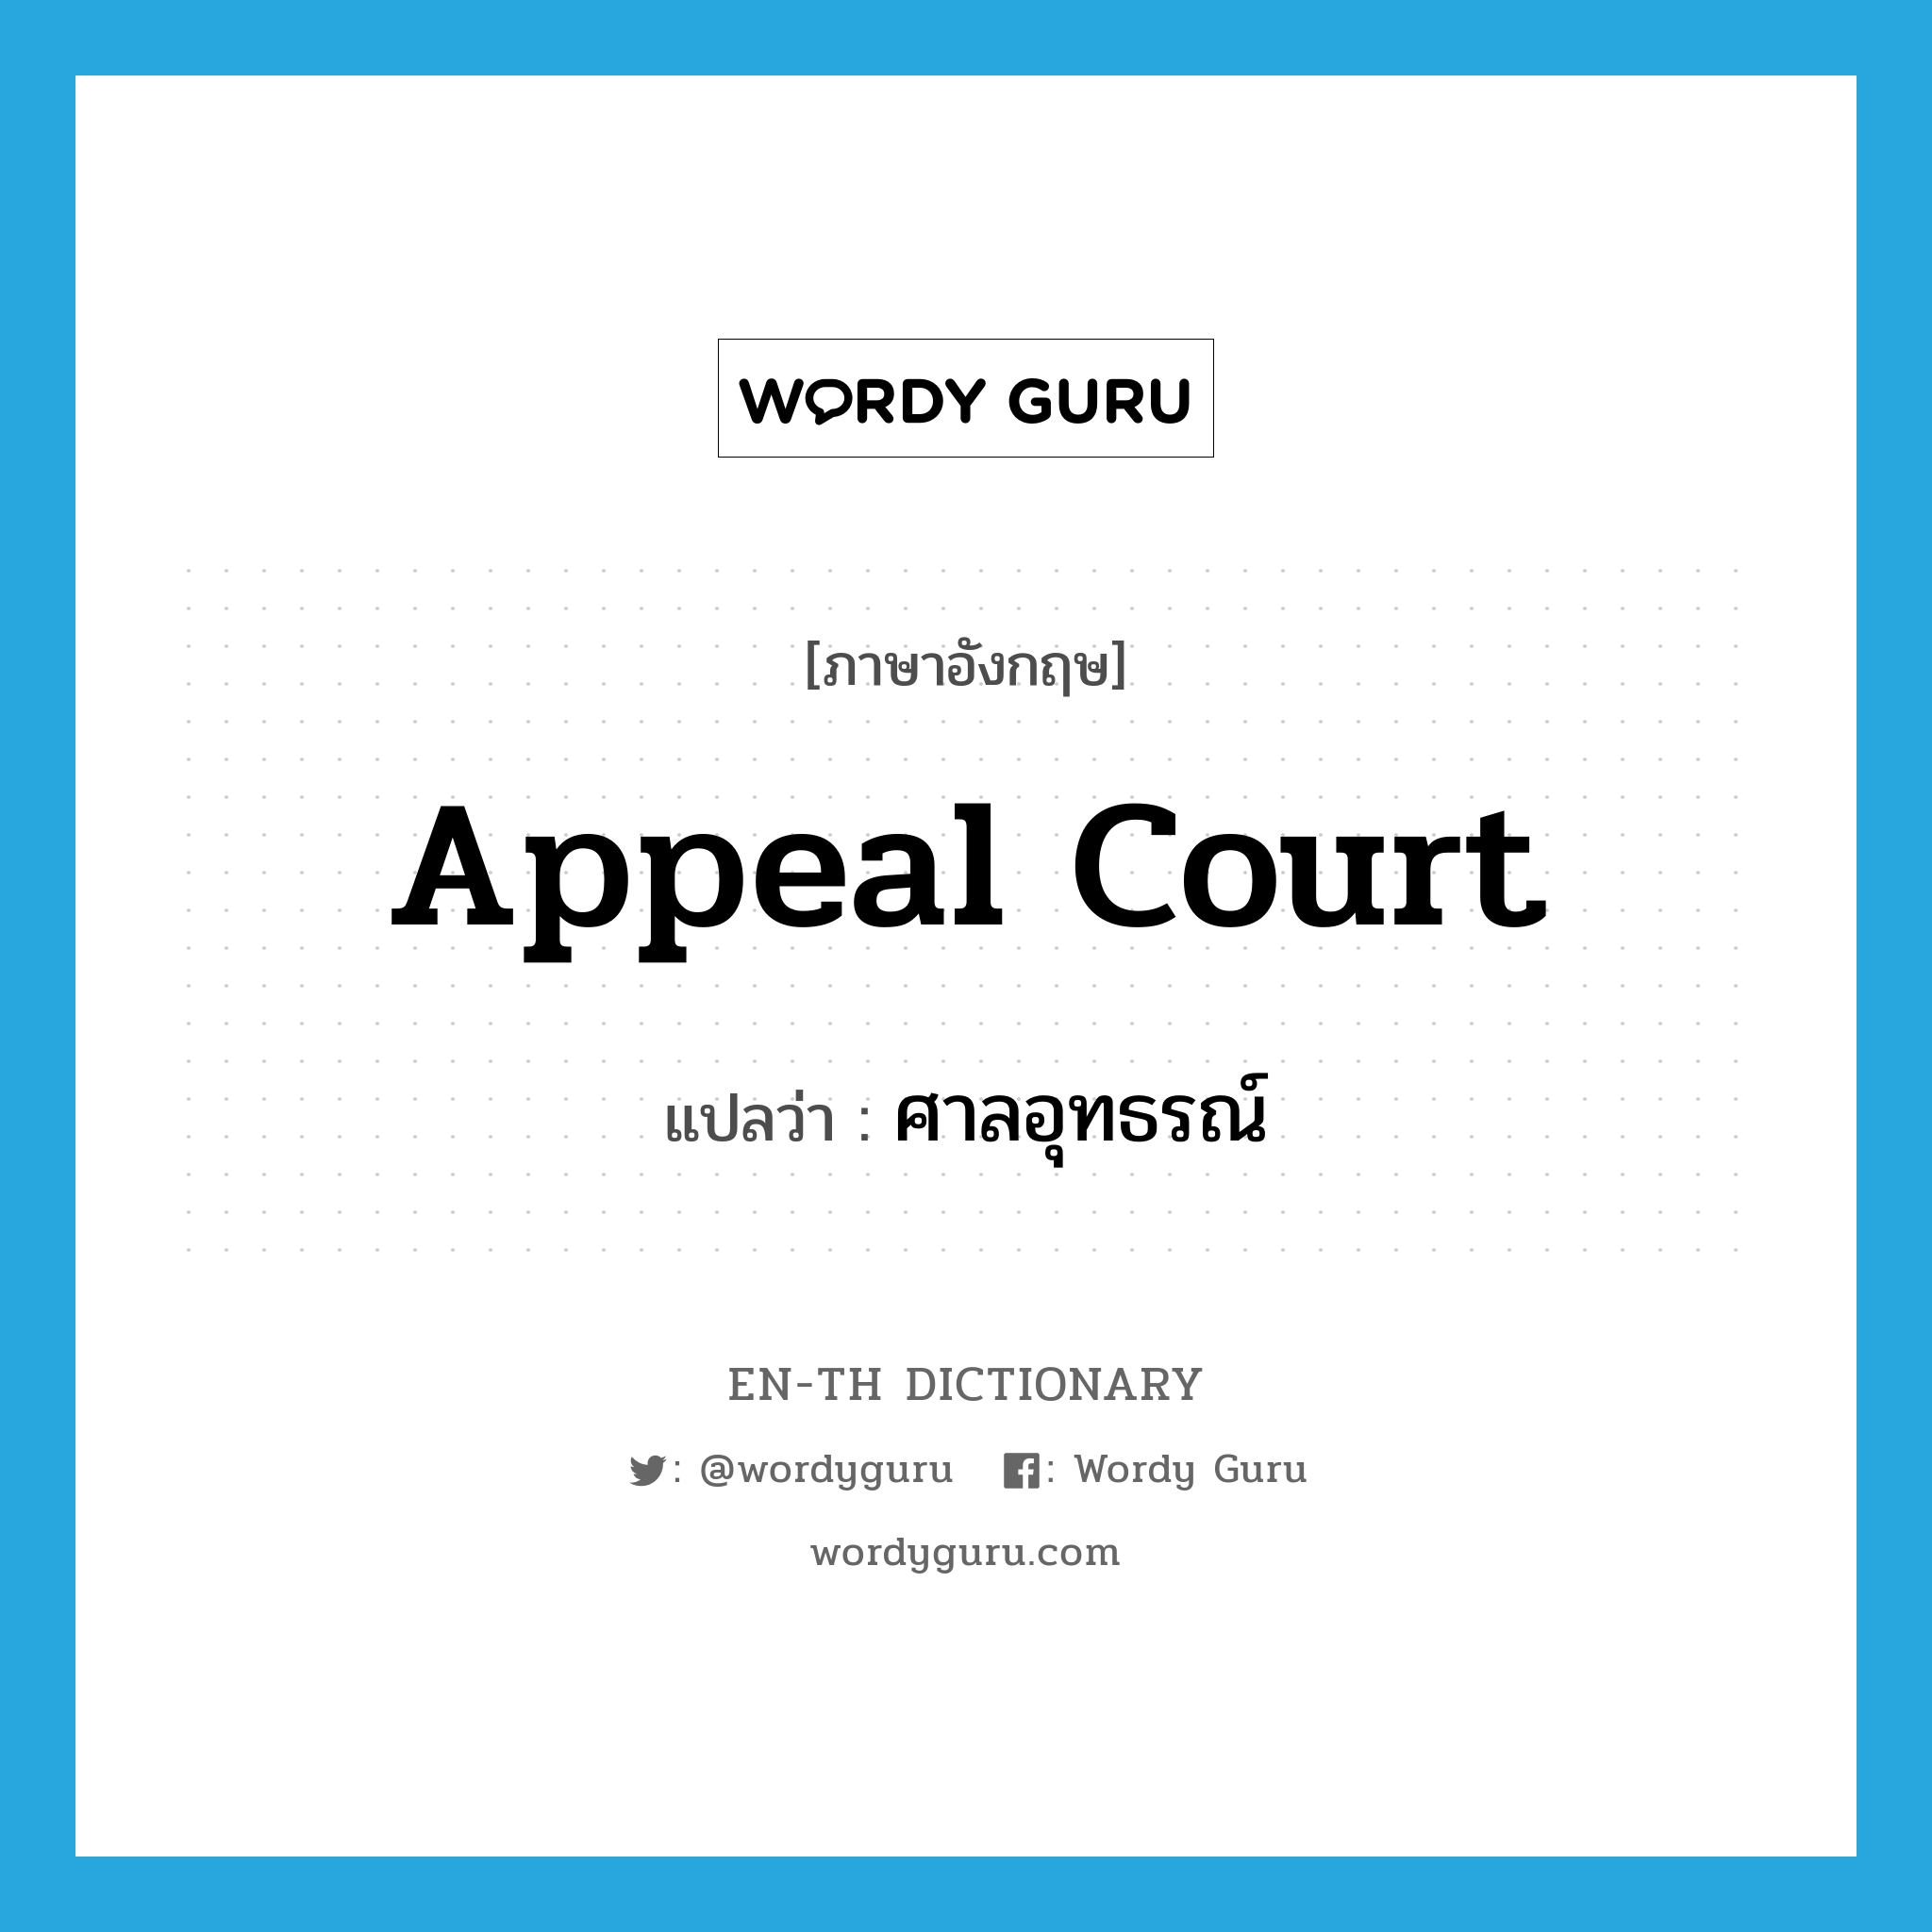 appeal court แปลว่า?, คำศัพท์ภาษาอังกฤษ appeal court แปลว่า ศาลอุทธรณ์ ประเภท N หมวด N